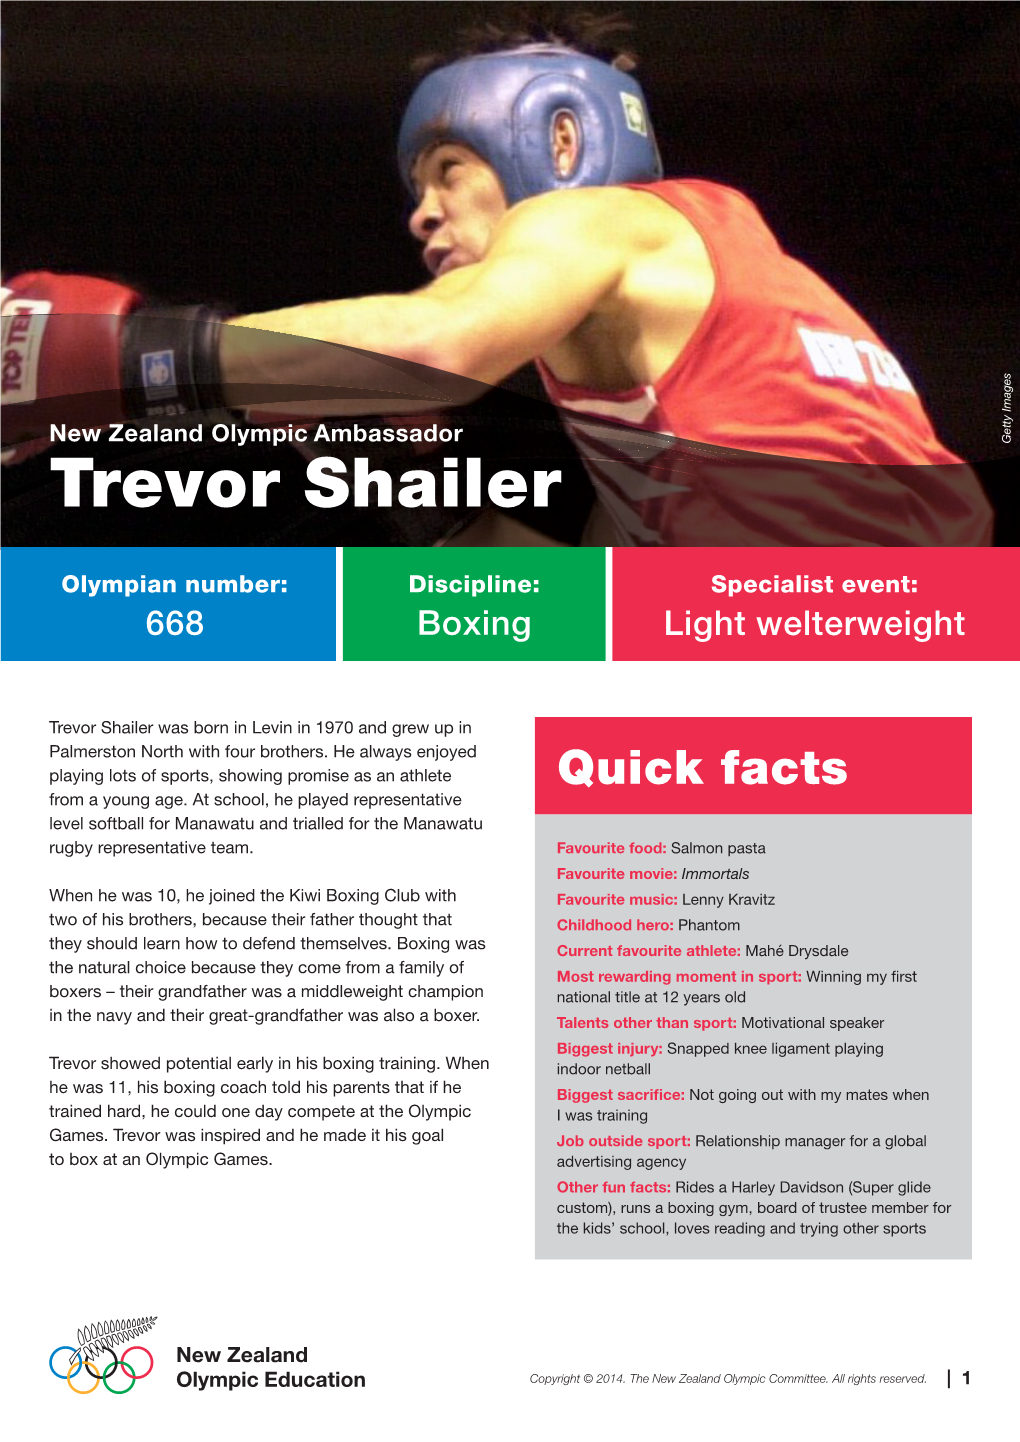 Trevor Shailer